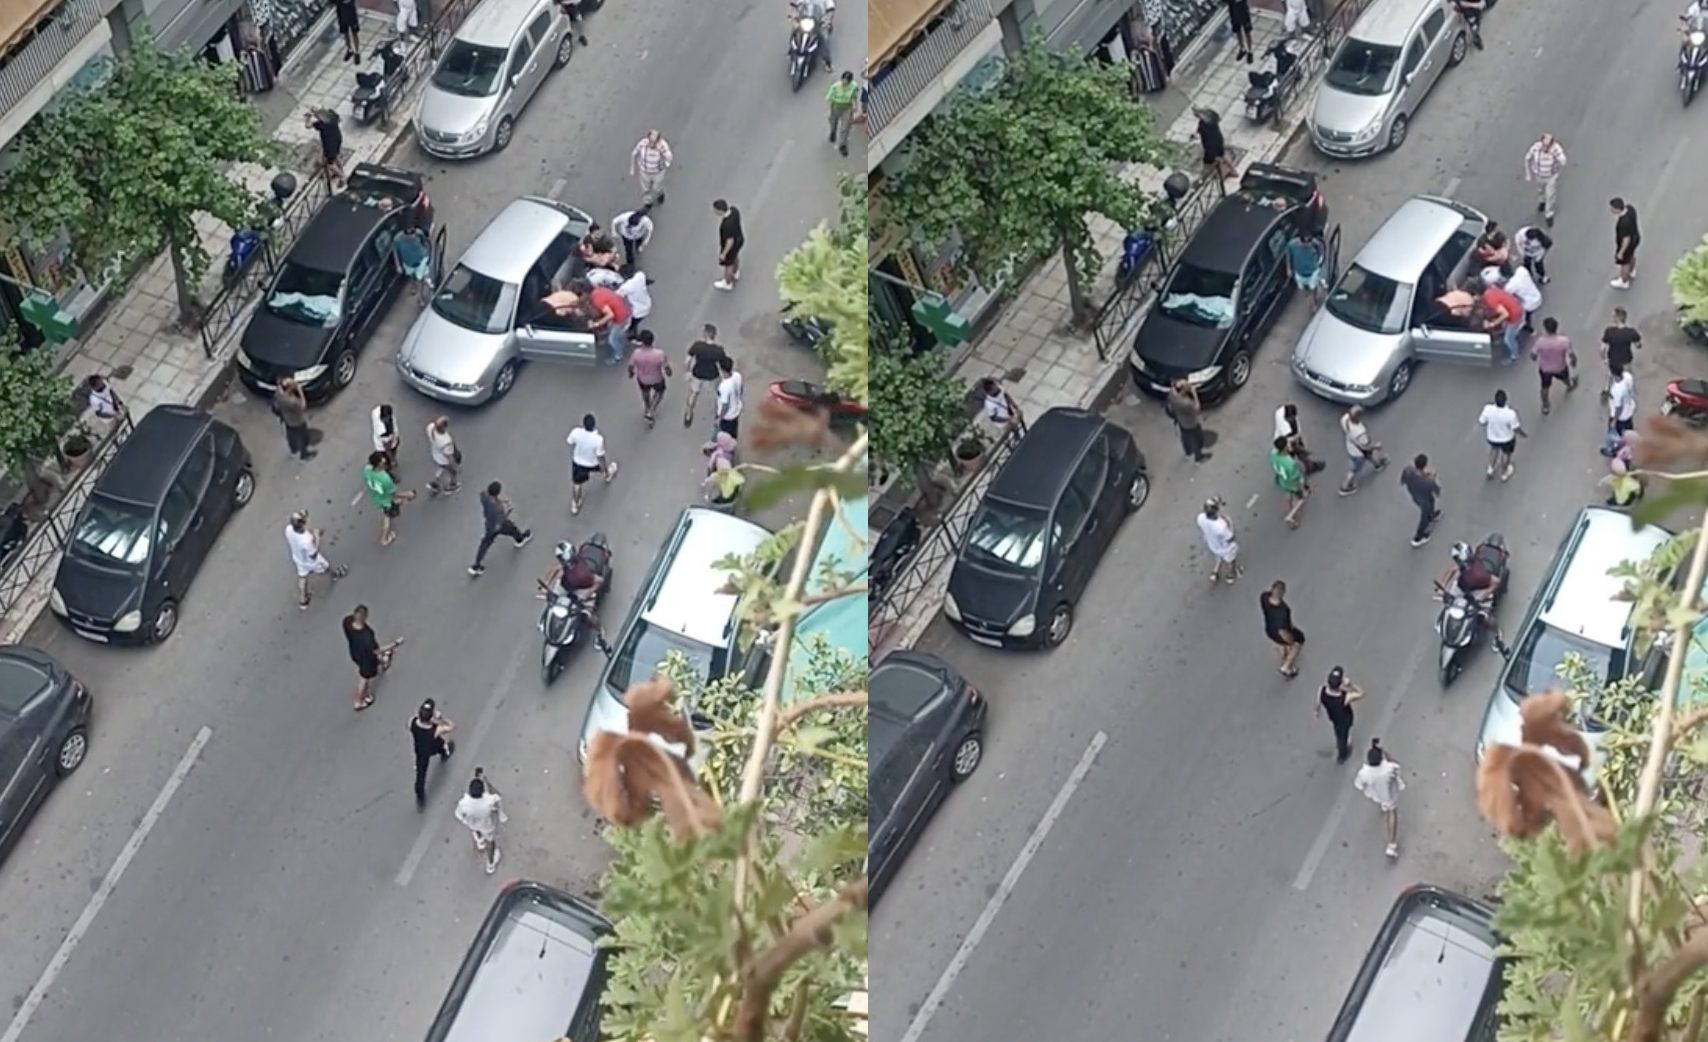 Βίντεο από τροχαίο στην πλατεία Βικτώριας – Οδηγός σε σοκ ουρλιάζει αφού τραυμάτισε παιδάκι